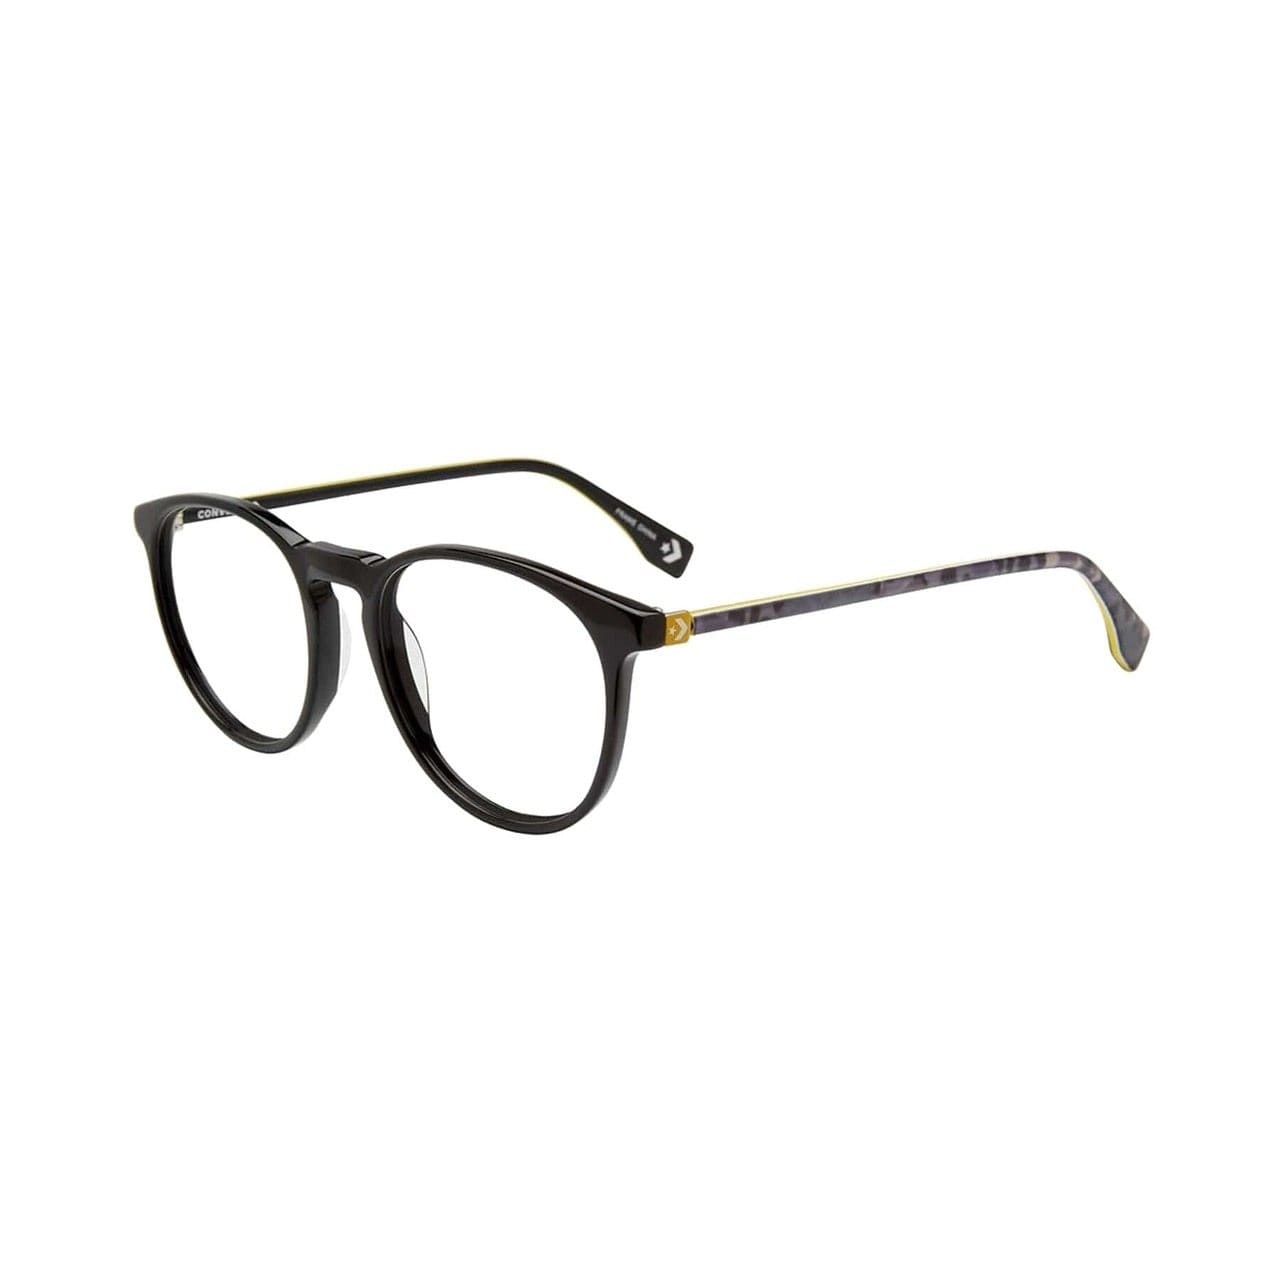 Converse Q324 Black Round Men's Acetate Eyeglasses